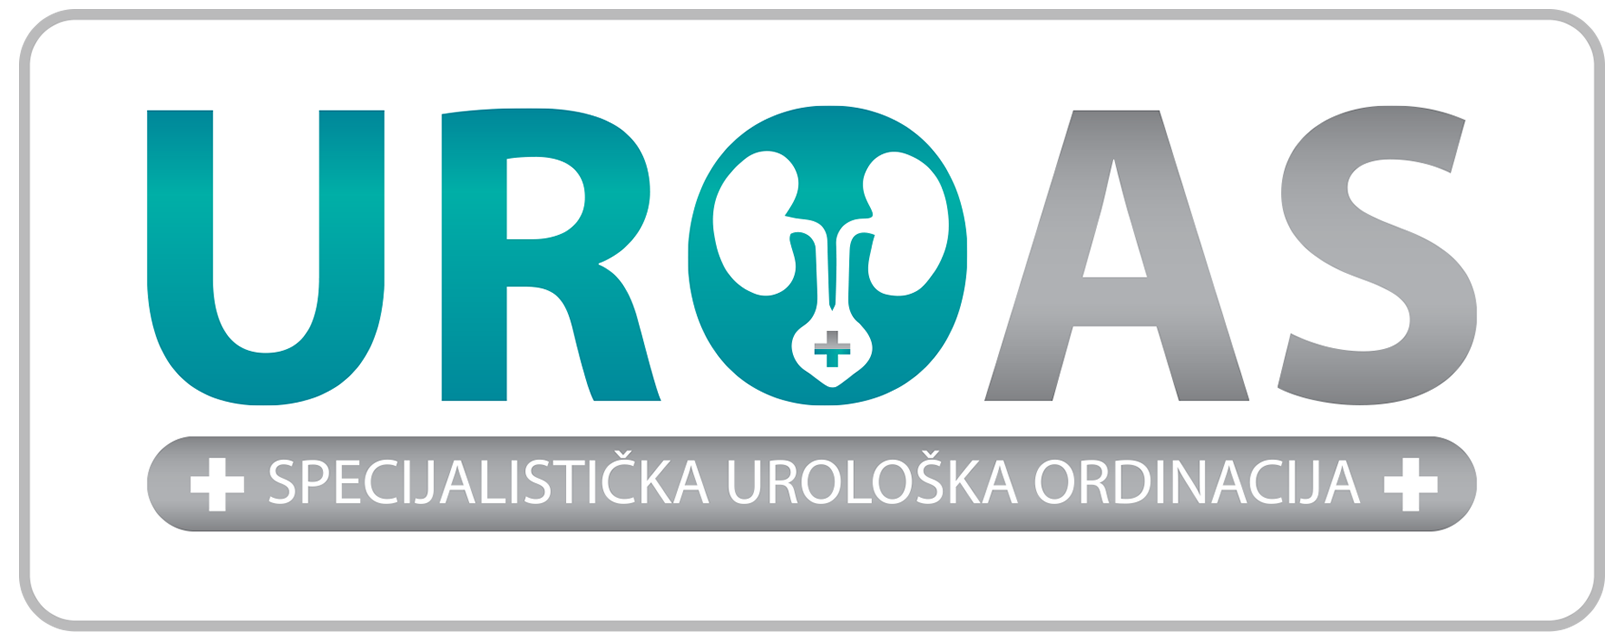 UROAS urologija | Specijalistička urološka ordinacija UROAS | Beograd